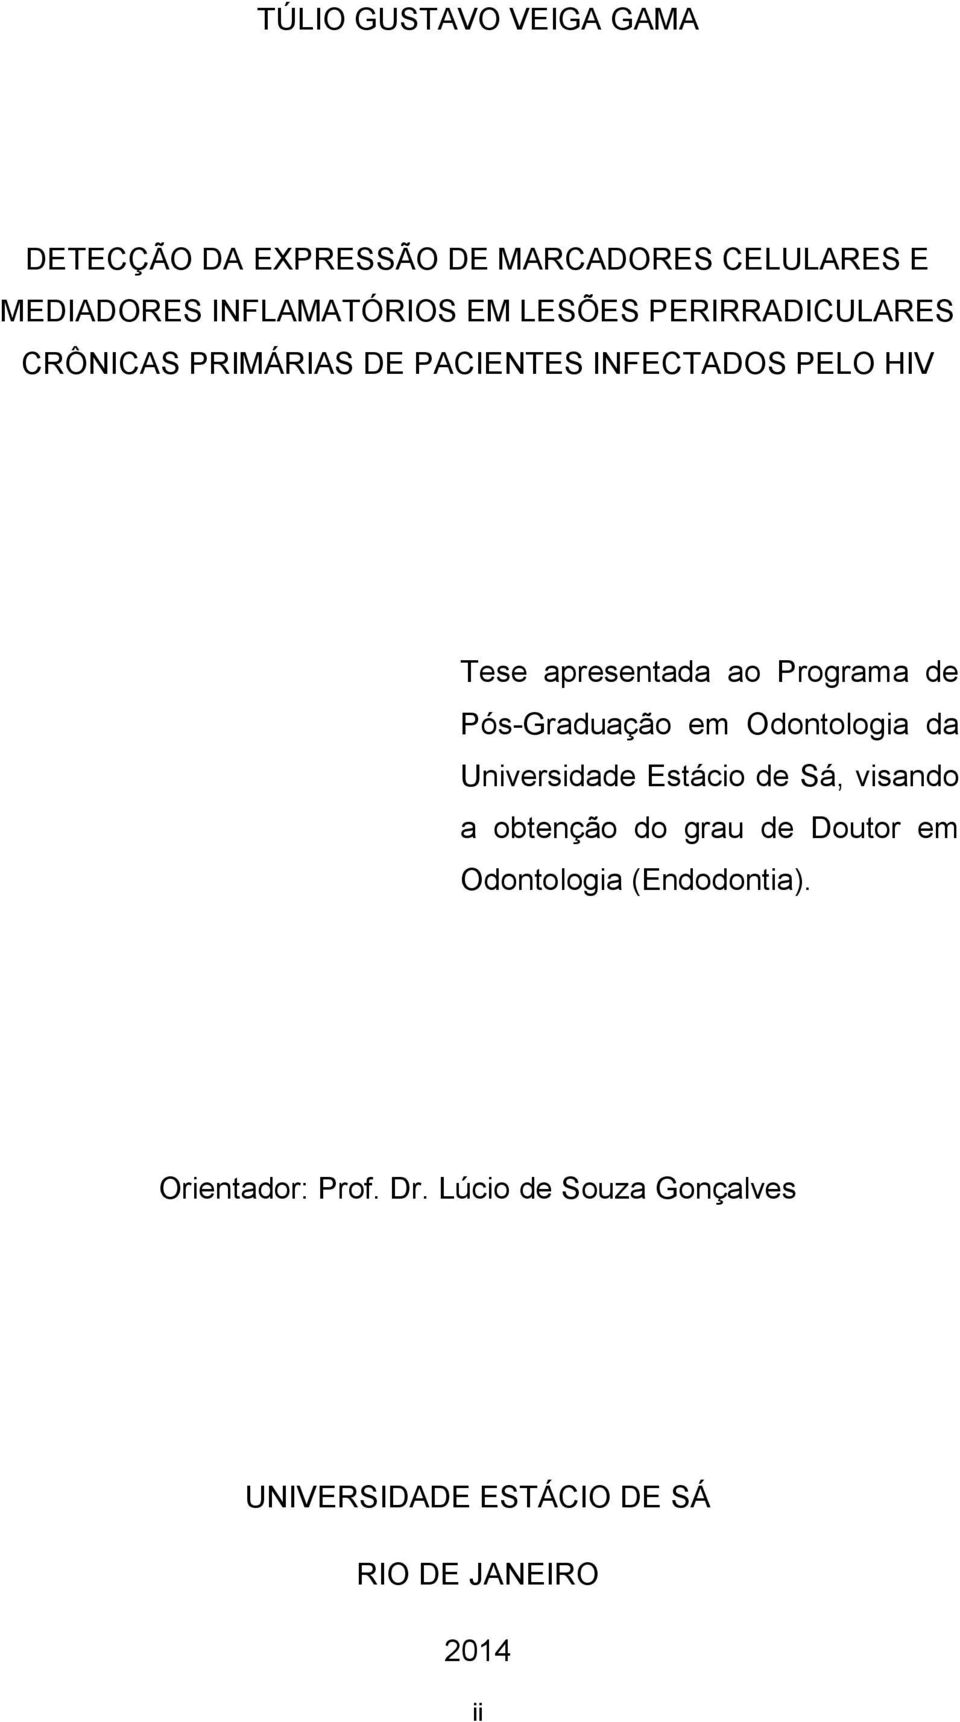 Pós-Graduação em Odontologia da Universidade Estácio de Sá, visando a obtenção do grau de Doutor em